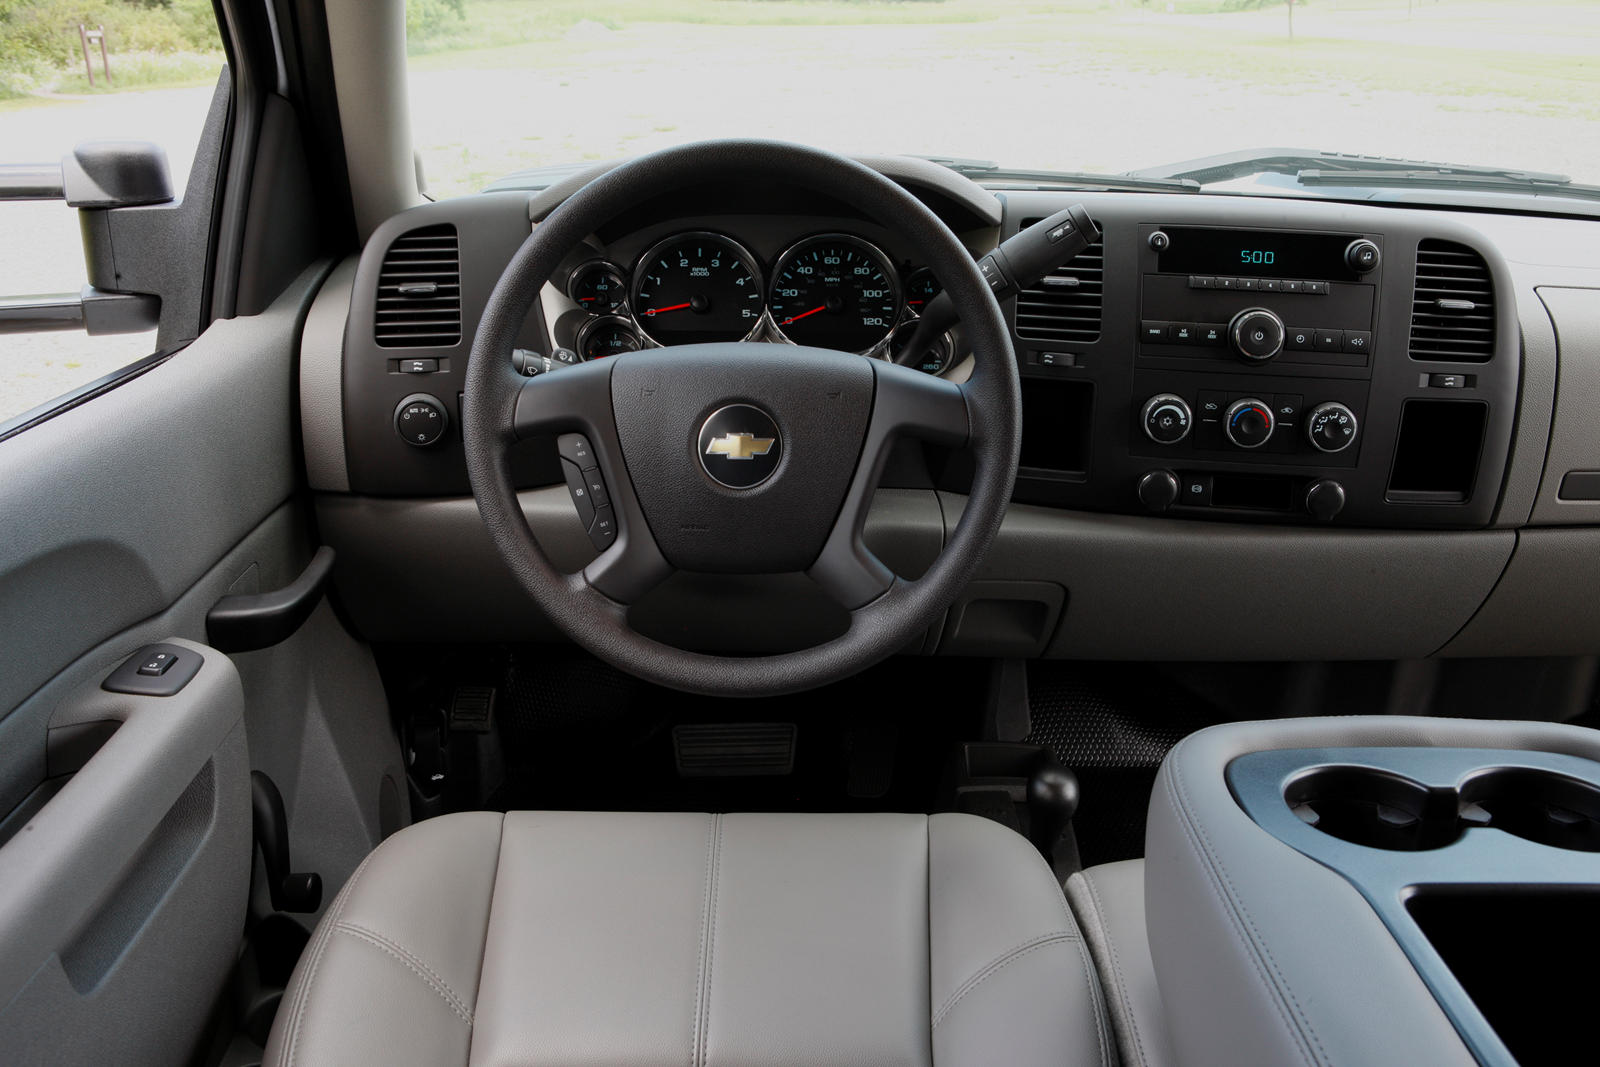 2010 Chevrolet Silverado 2500HD Steering Wheel